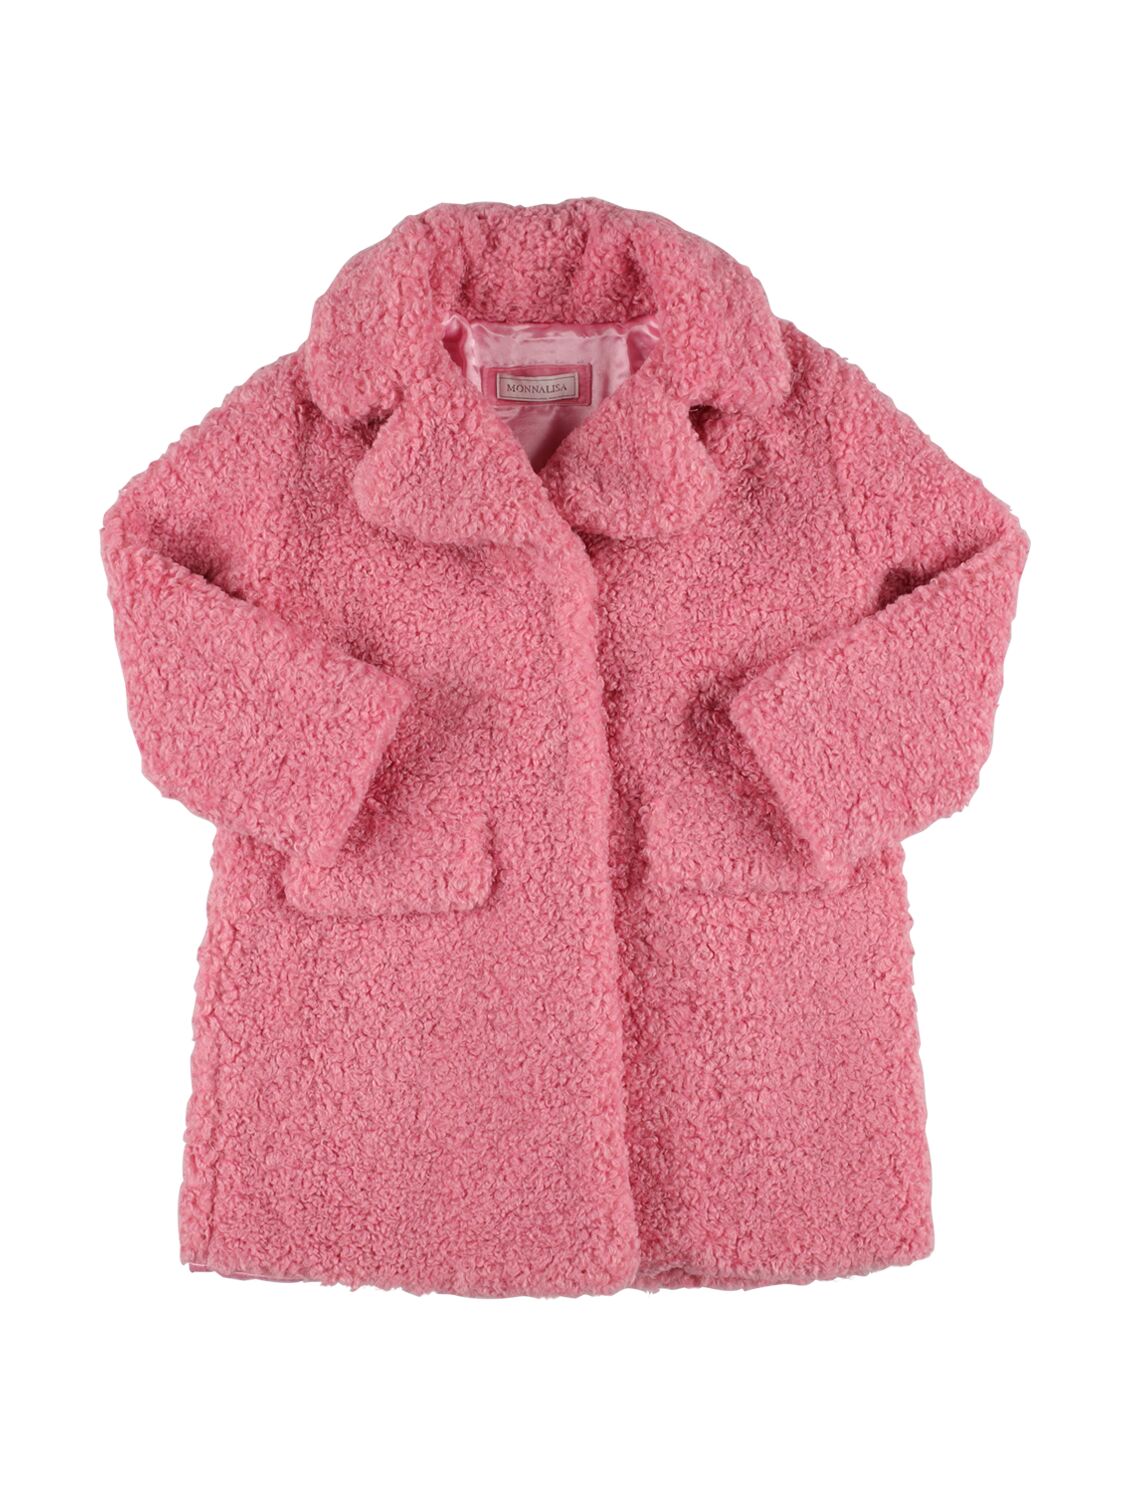 Monnalisa Kids' Teddy Coat In Pink